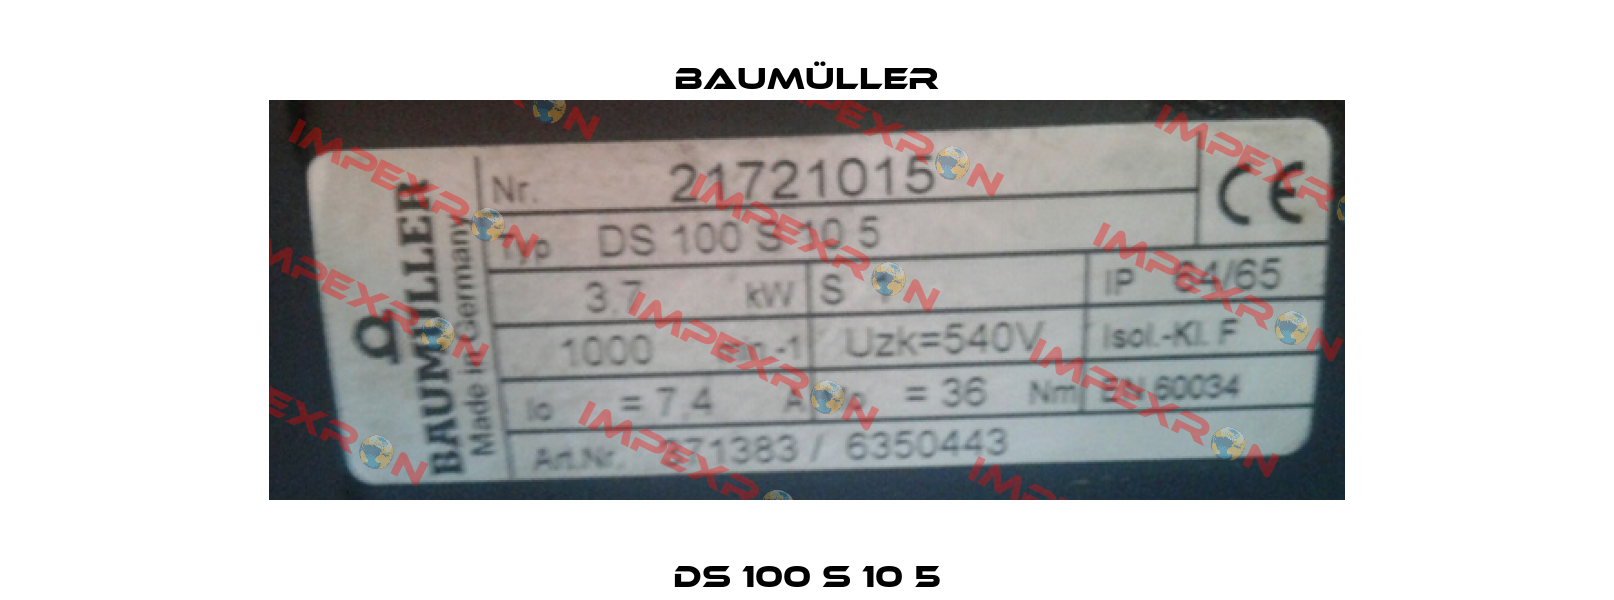 DS 100 S 10 5 Baumüller